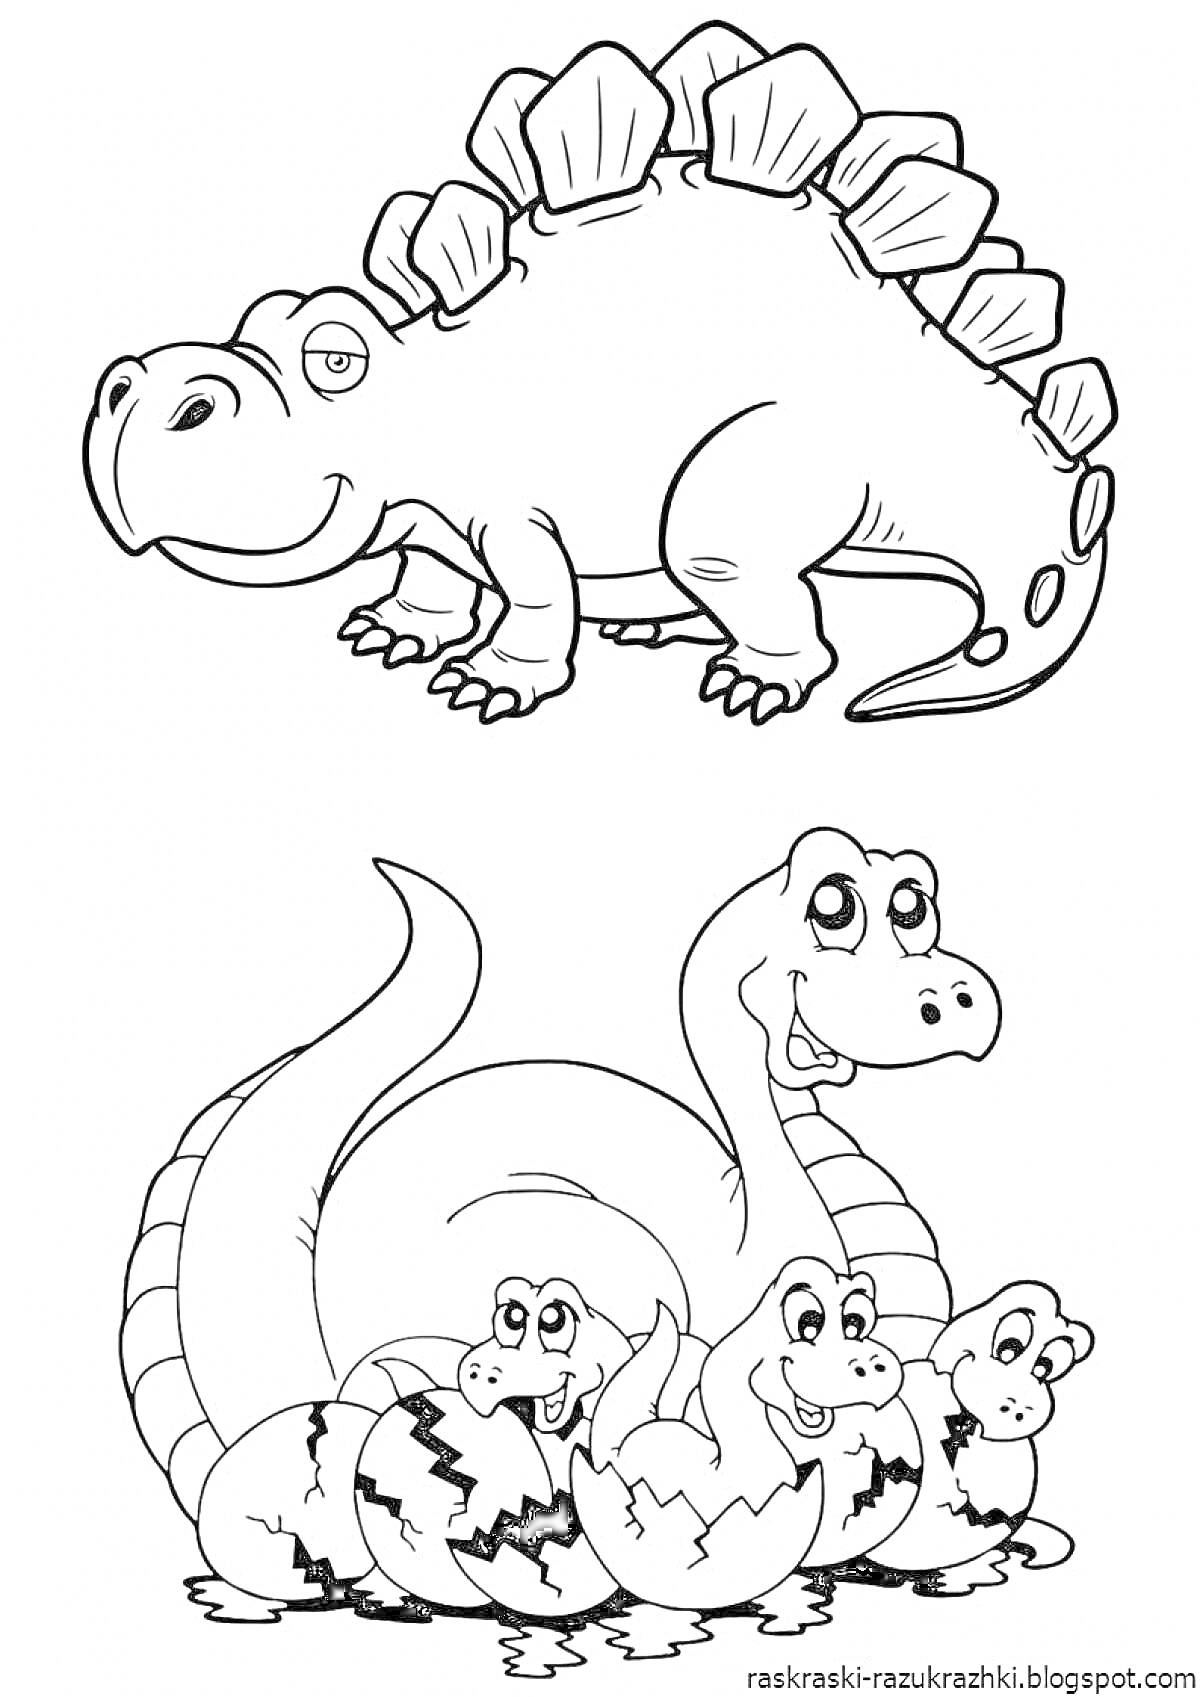 Динозавр с пластинами на спине и семейство динозавров, вылупляющихся из яиц